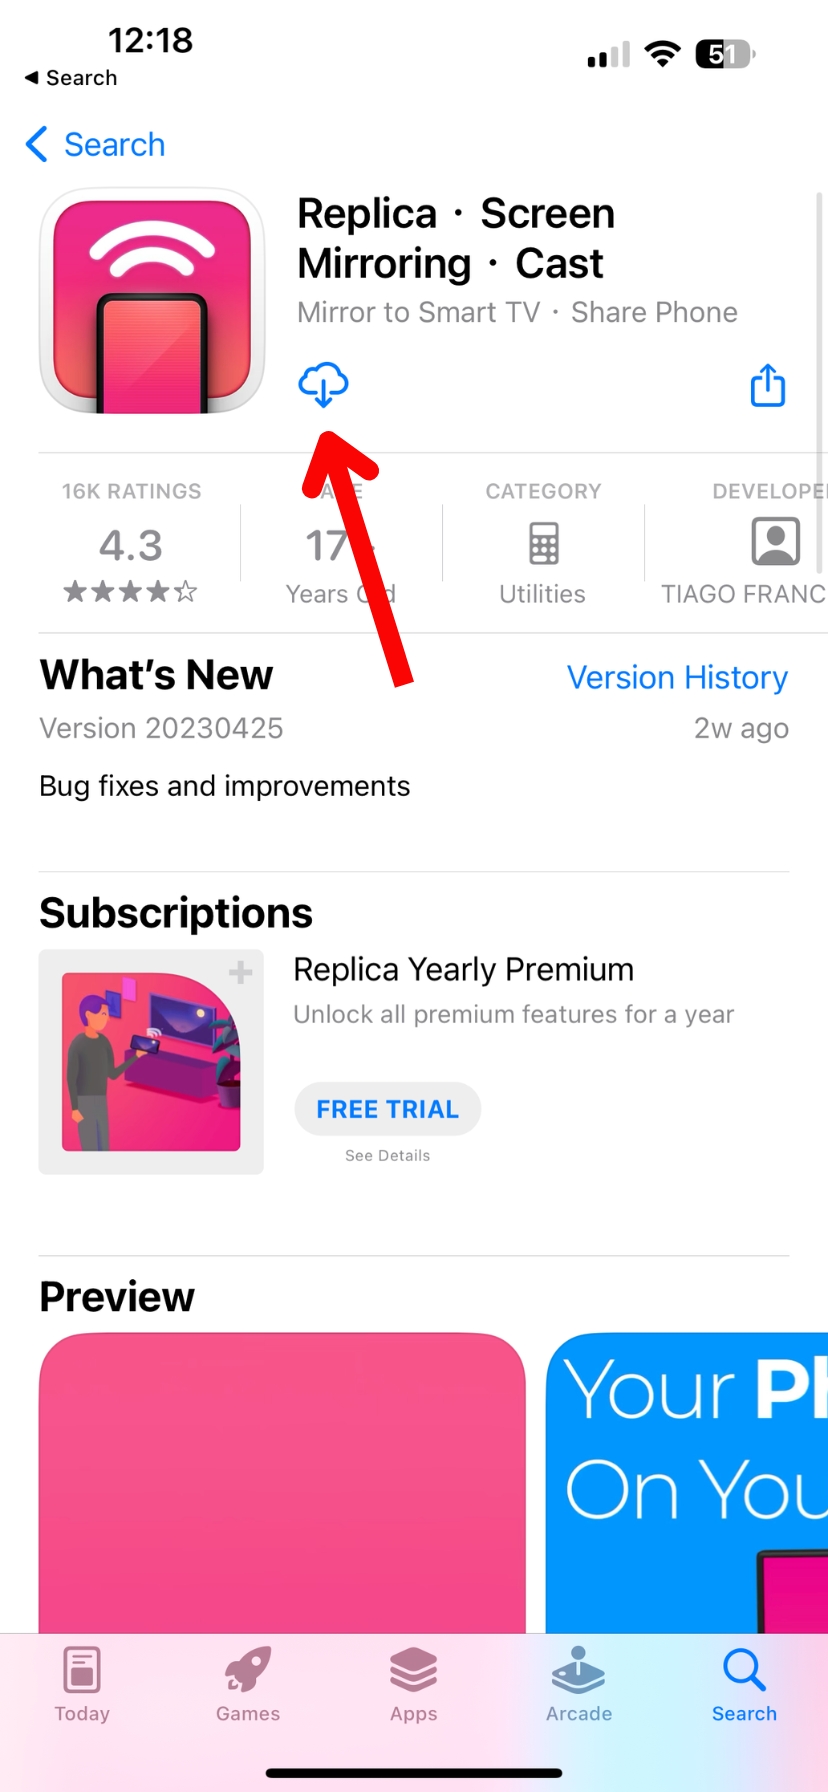 Replica in the App Store